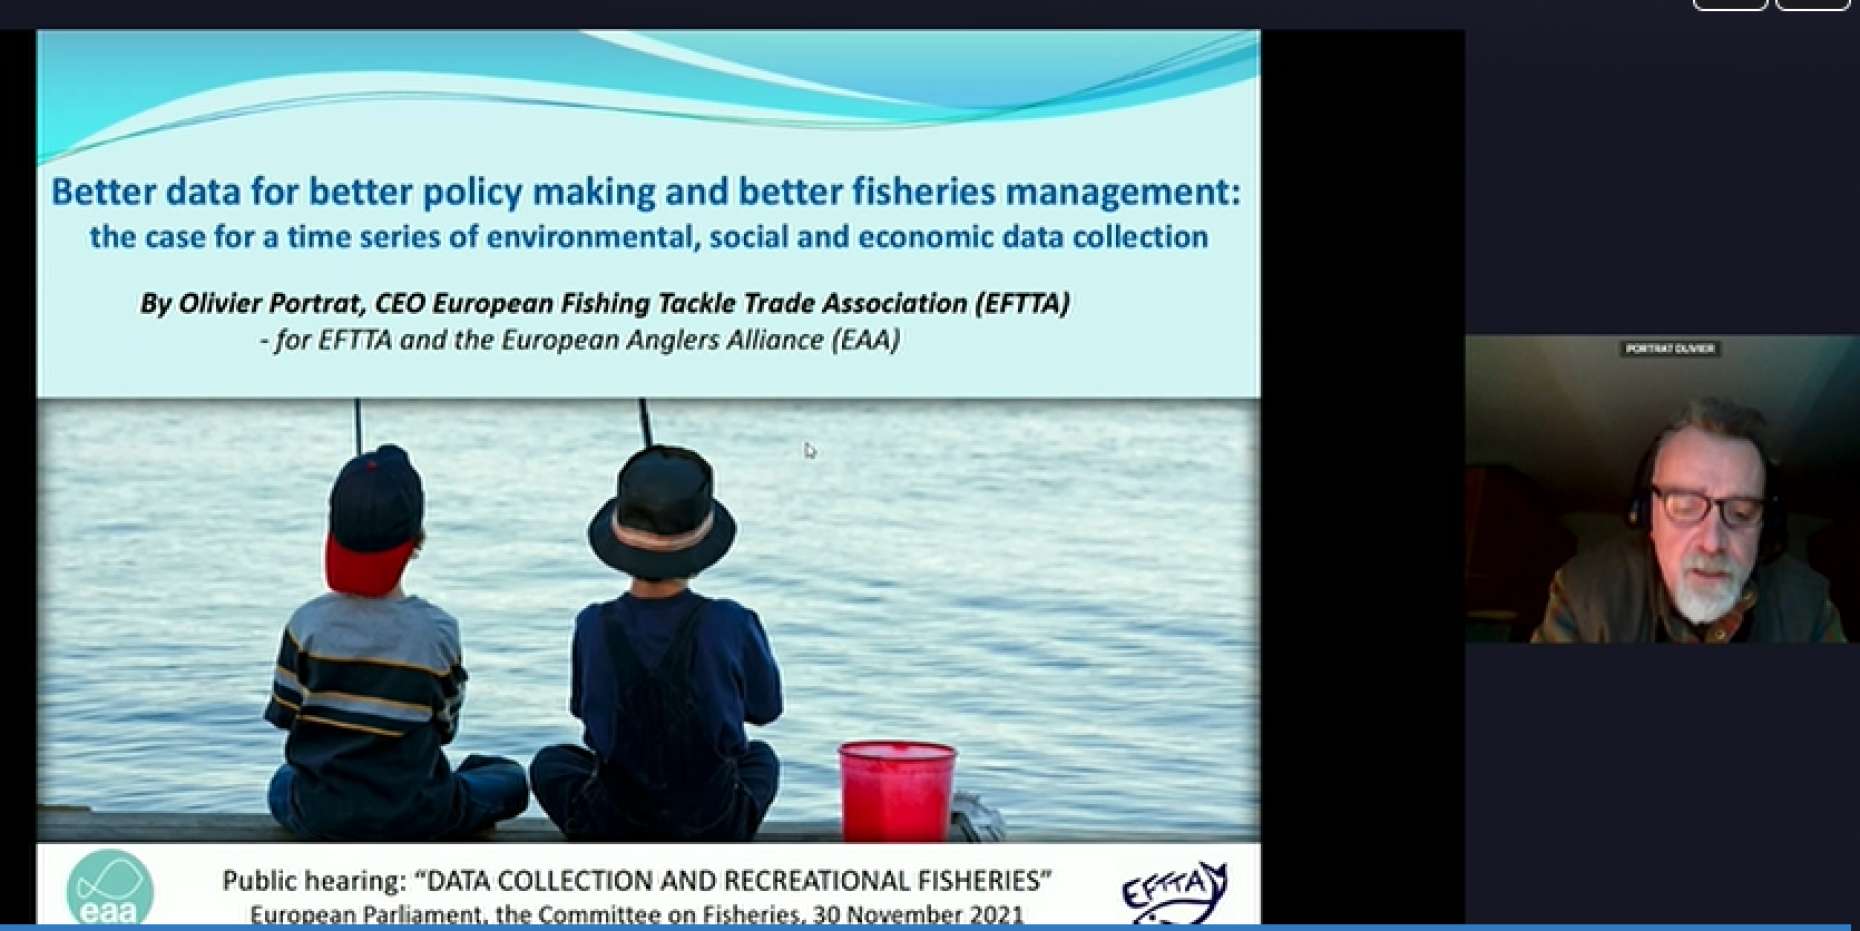 Olivier Portrat, CEO der European Fishing Tackle and Trade Association (EFTTA) hält einen Vortrag im Namen der EAA und EFTTA